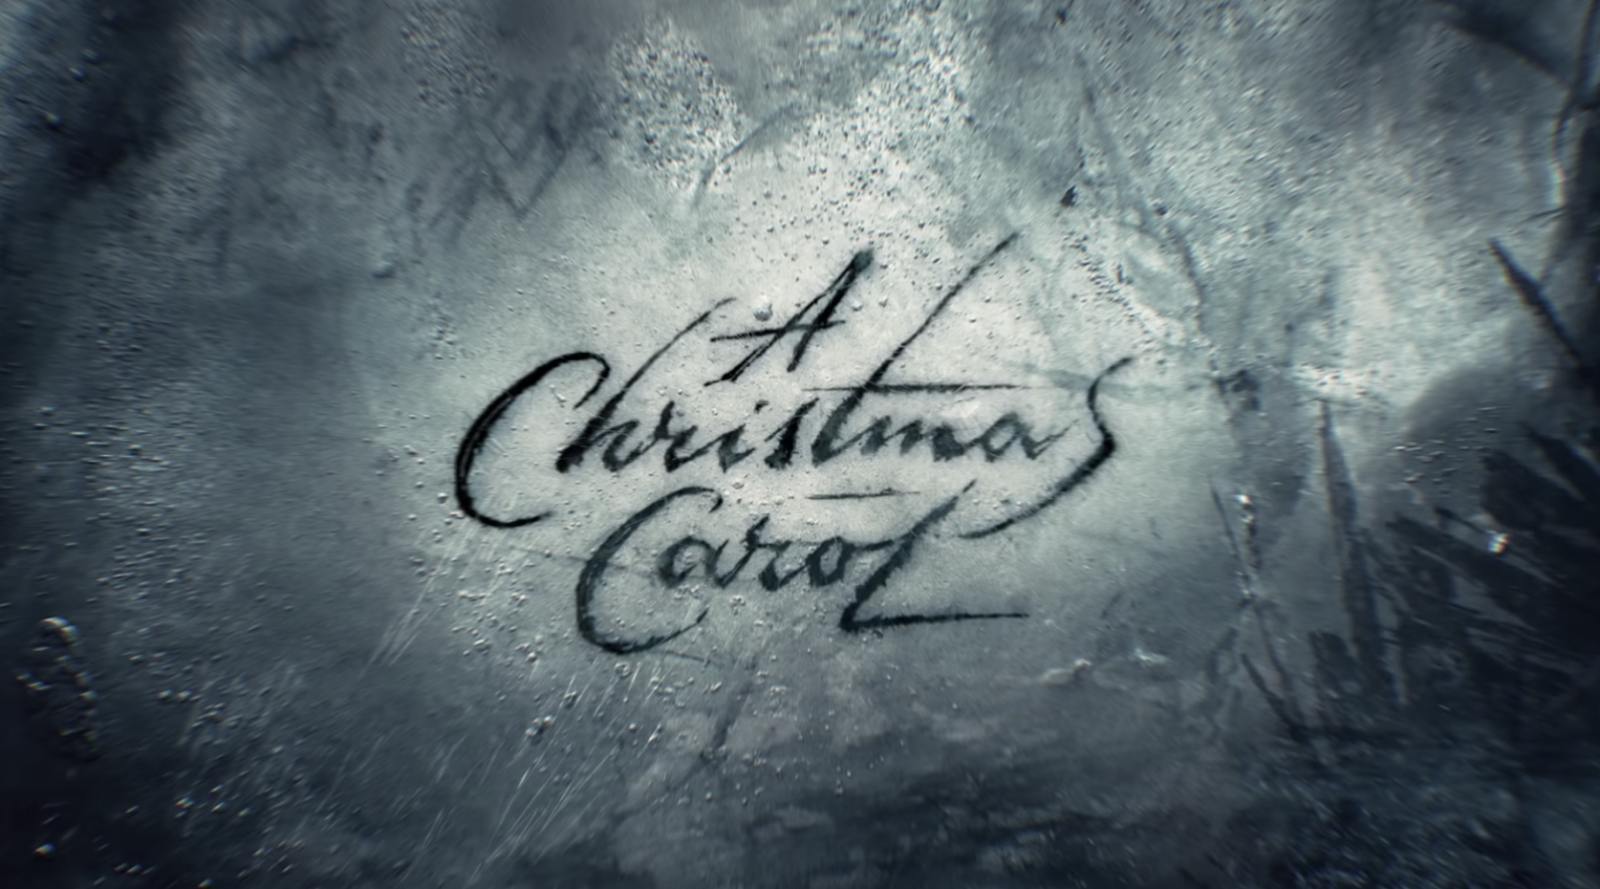 Teaser Released for FX Original Movie "A Christmas Carol"